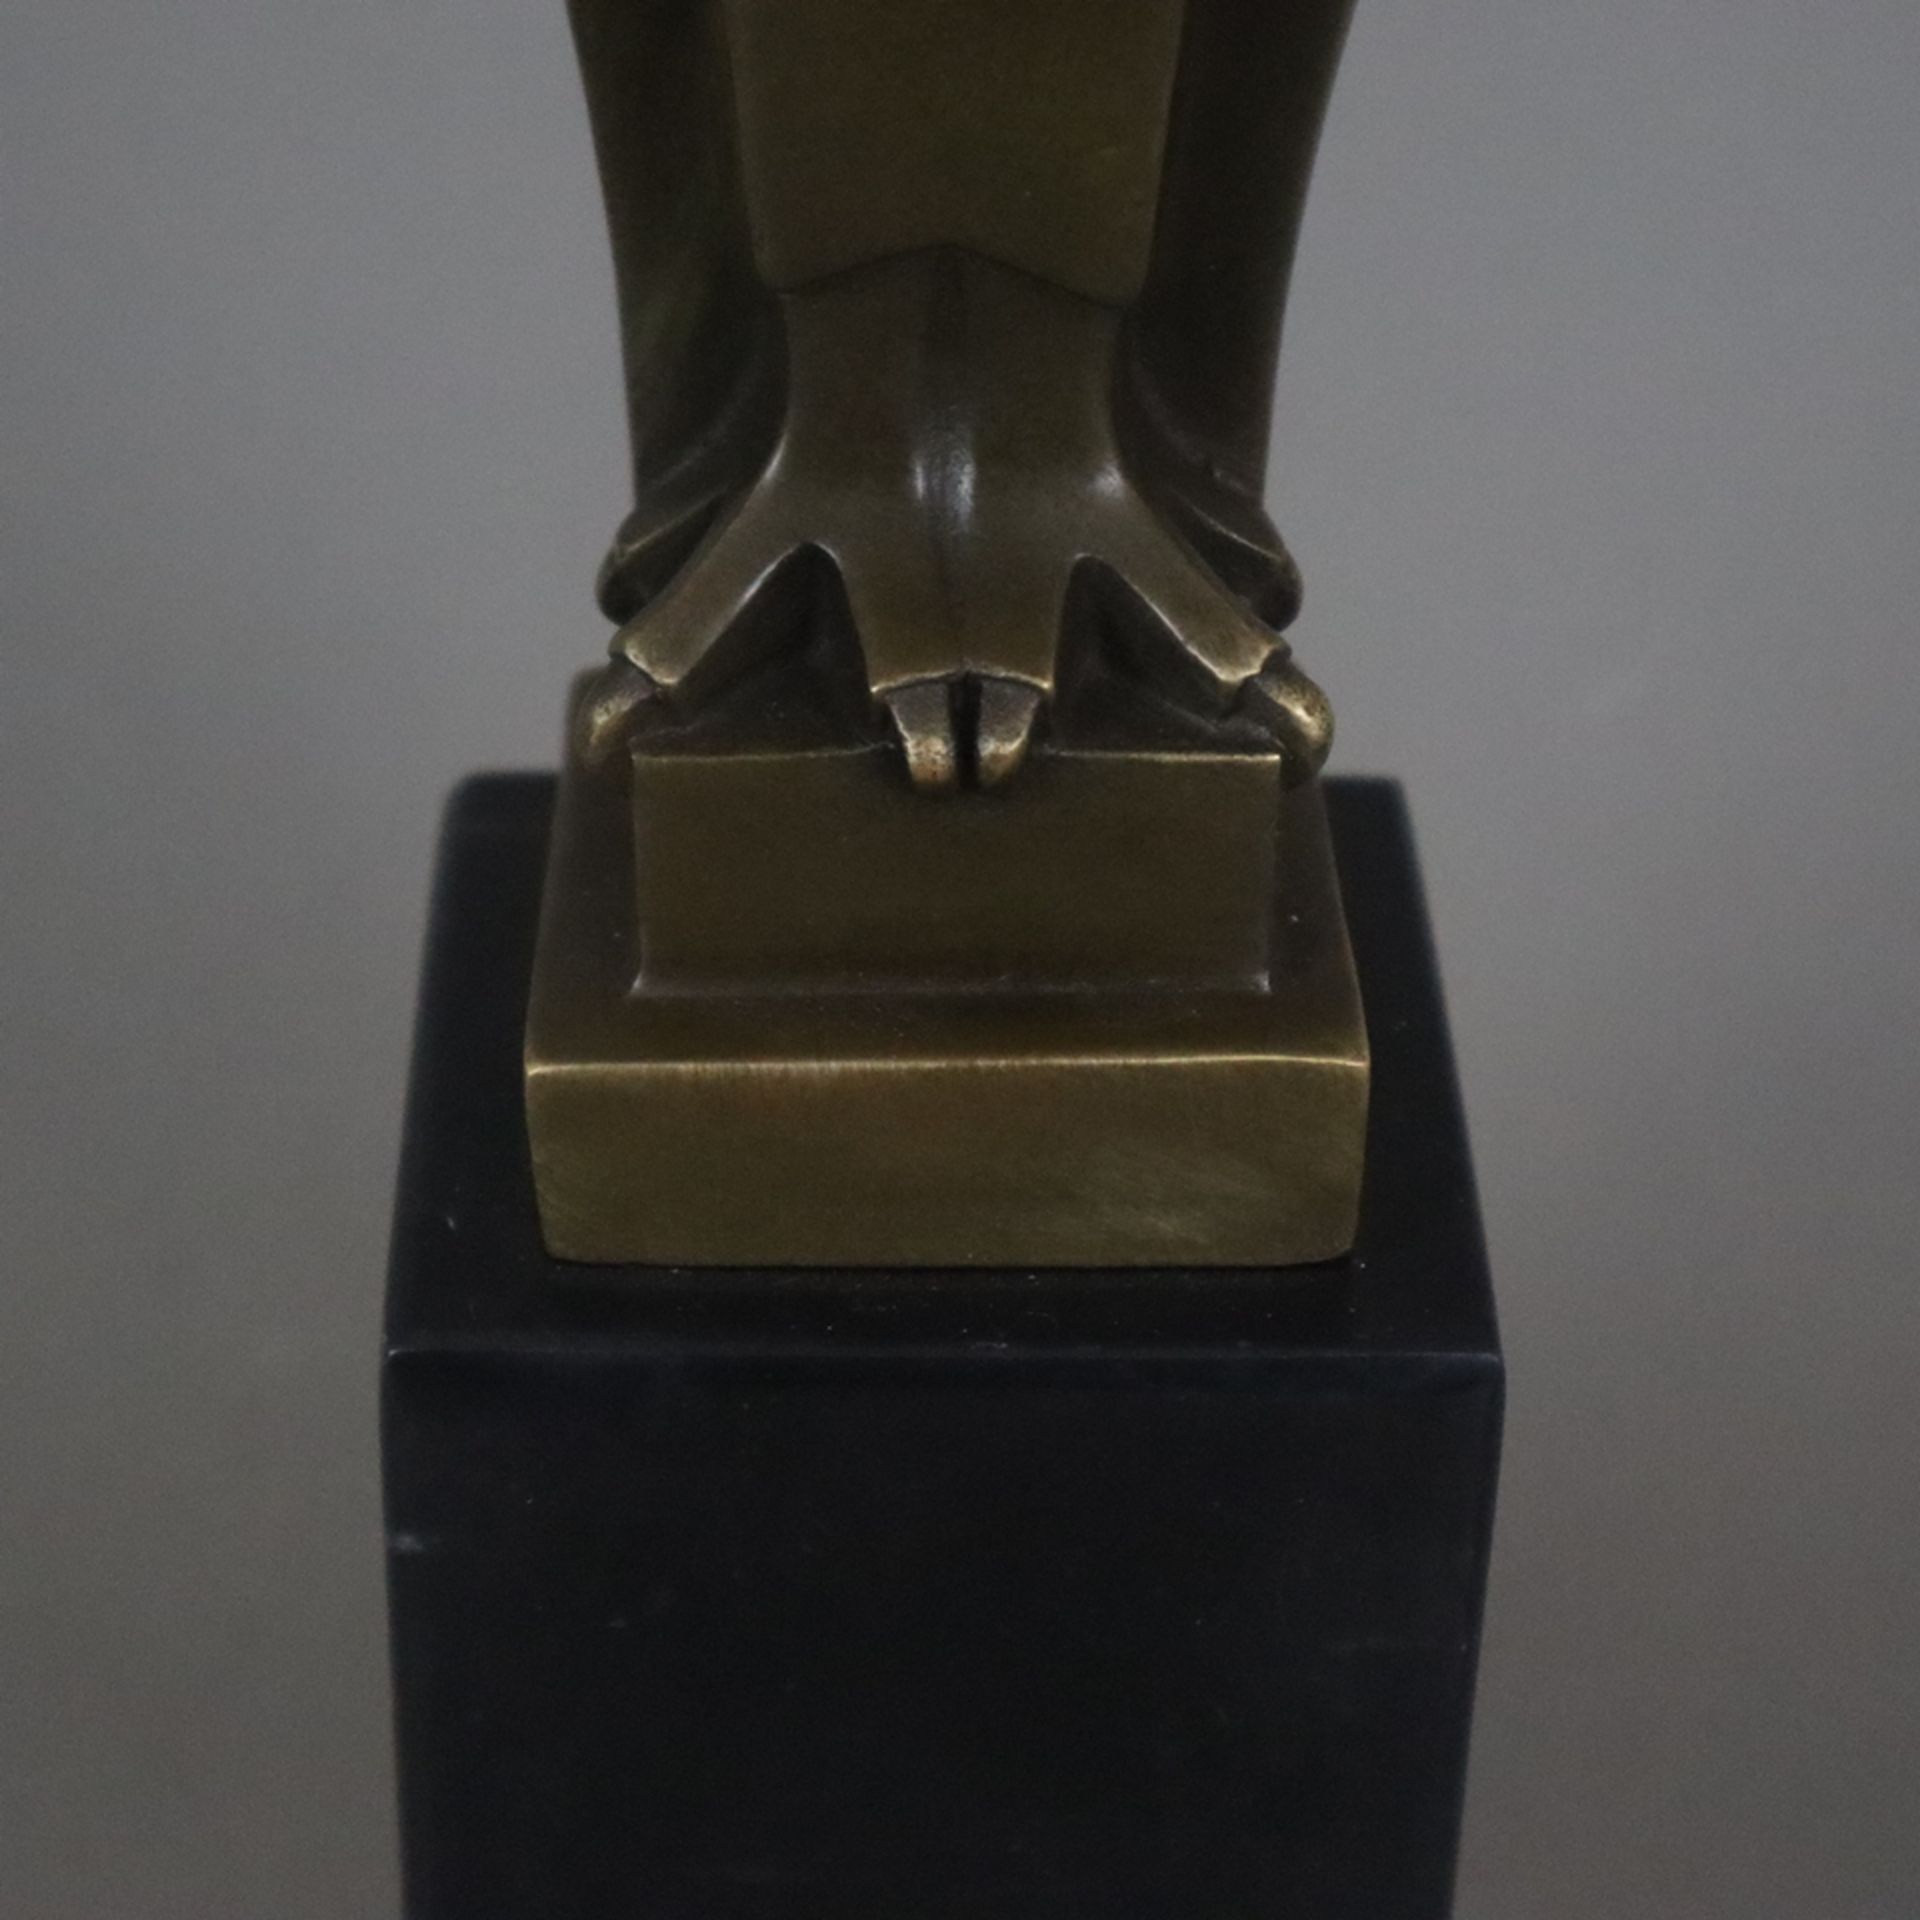 Coenrad, J. B. (20. Jh.) - Eule", Bronze, braun patiniert, stilisierte Darstellung, Plinthe rücksei - Bild 4 aus 8